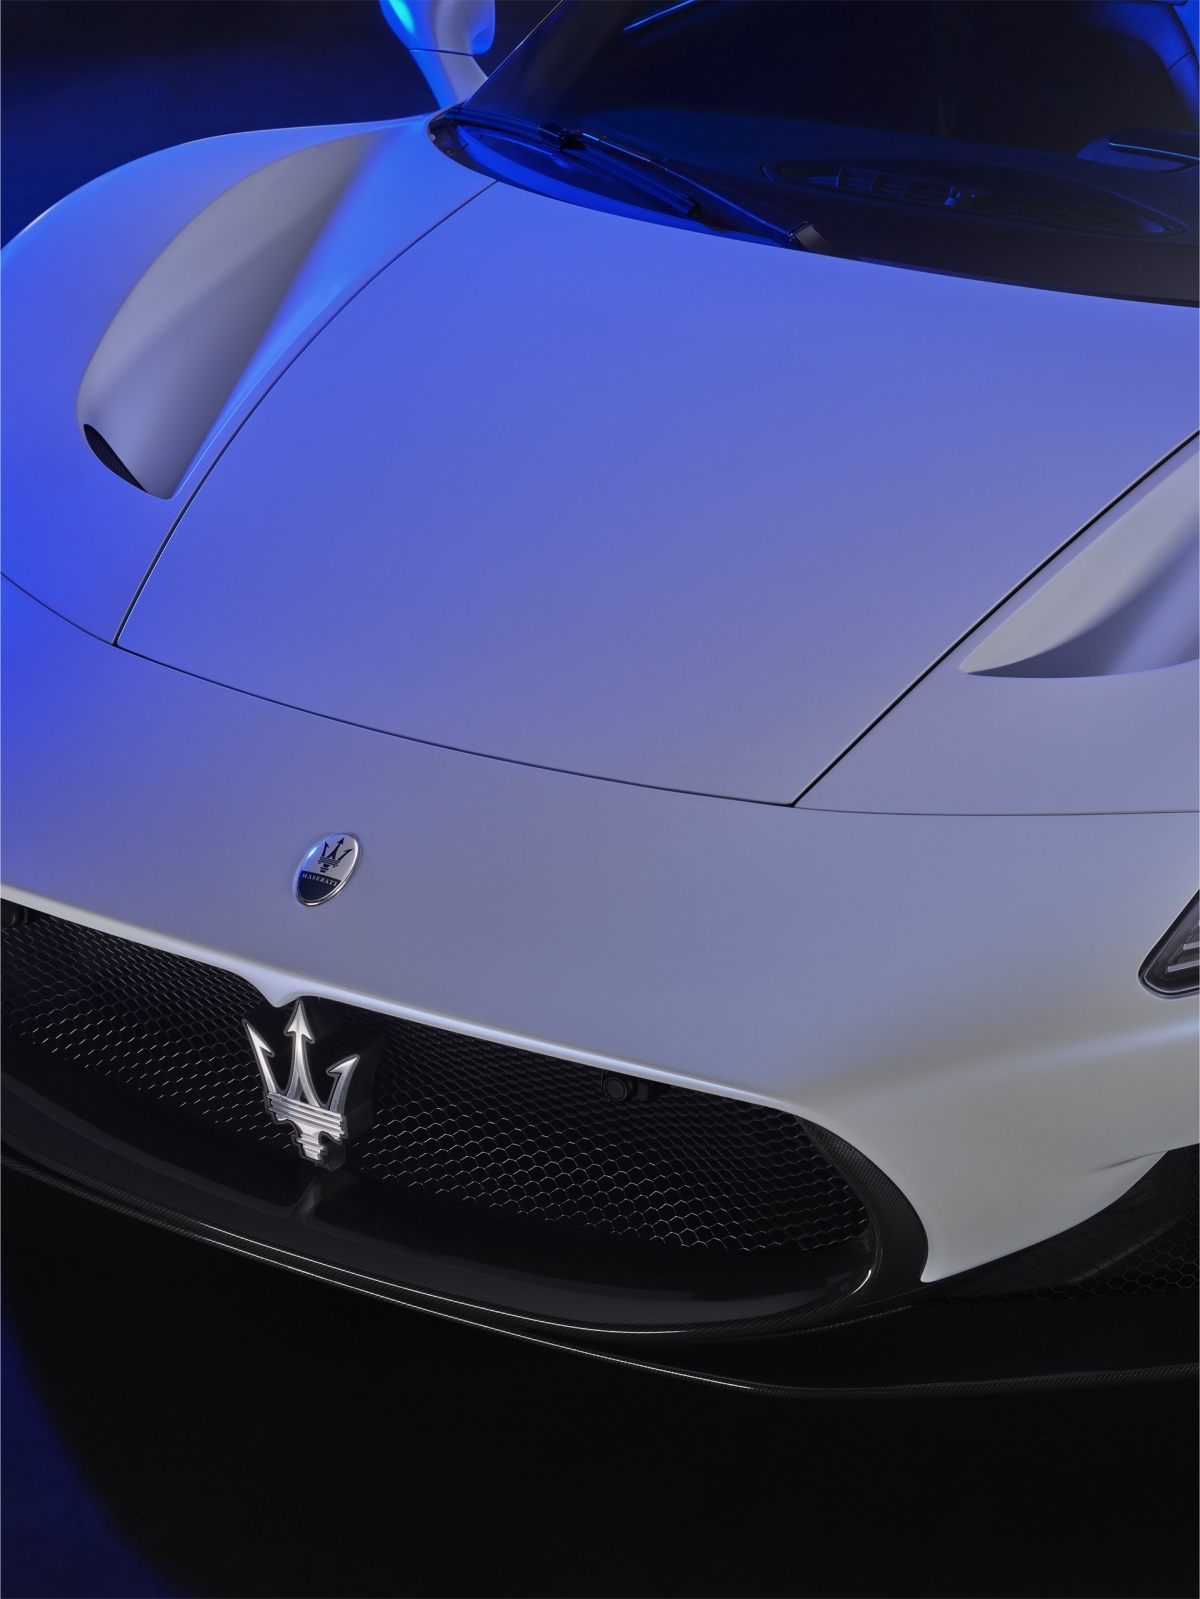 Kết hợp cùng thiết kế khí động học, hệ thống treo cải tiến cũng như các thiết lập hệ dẫn động khác nhau, Maserati MC20 có thể phù hợp với cả mục đích giải trí trên đường đua cũng như sử dụng hàng ngày.